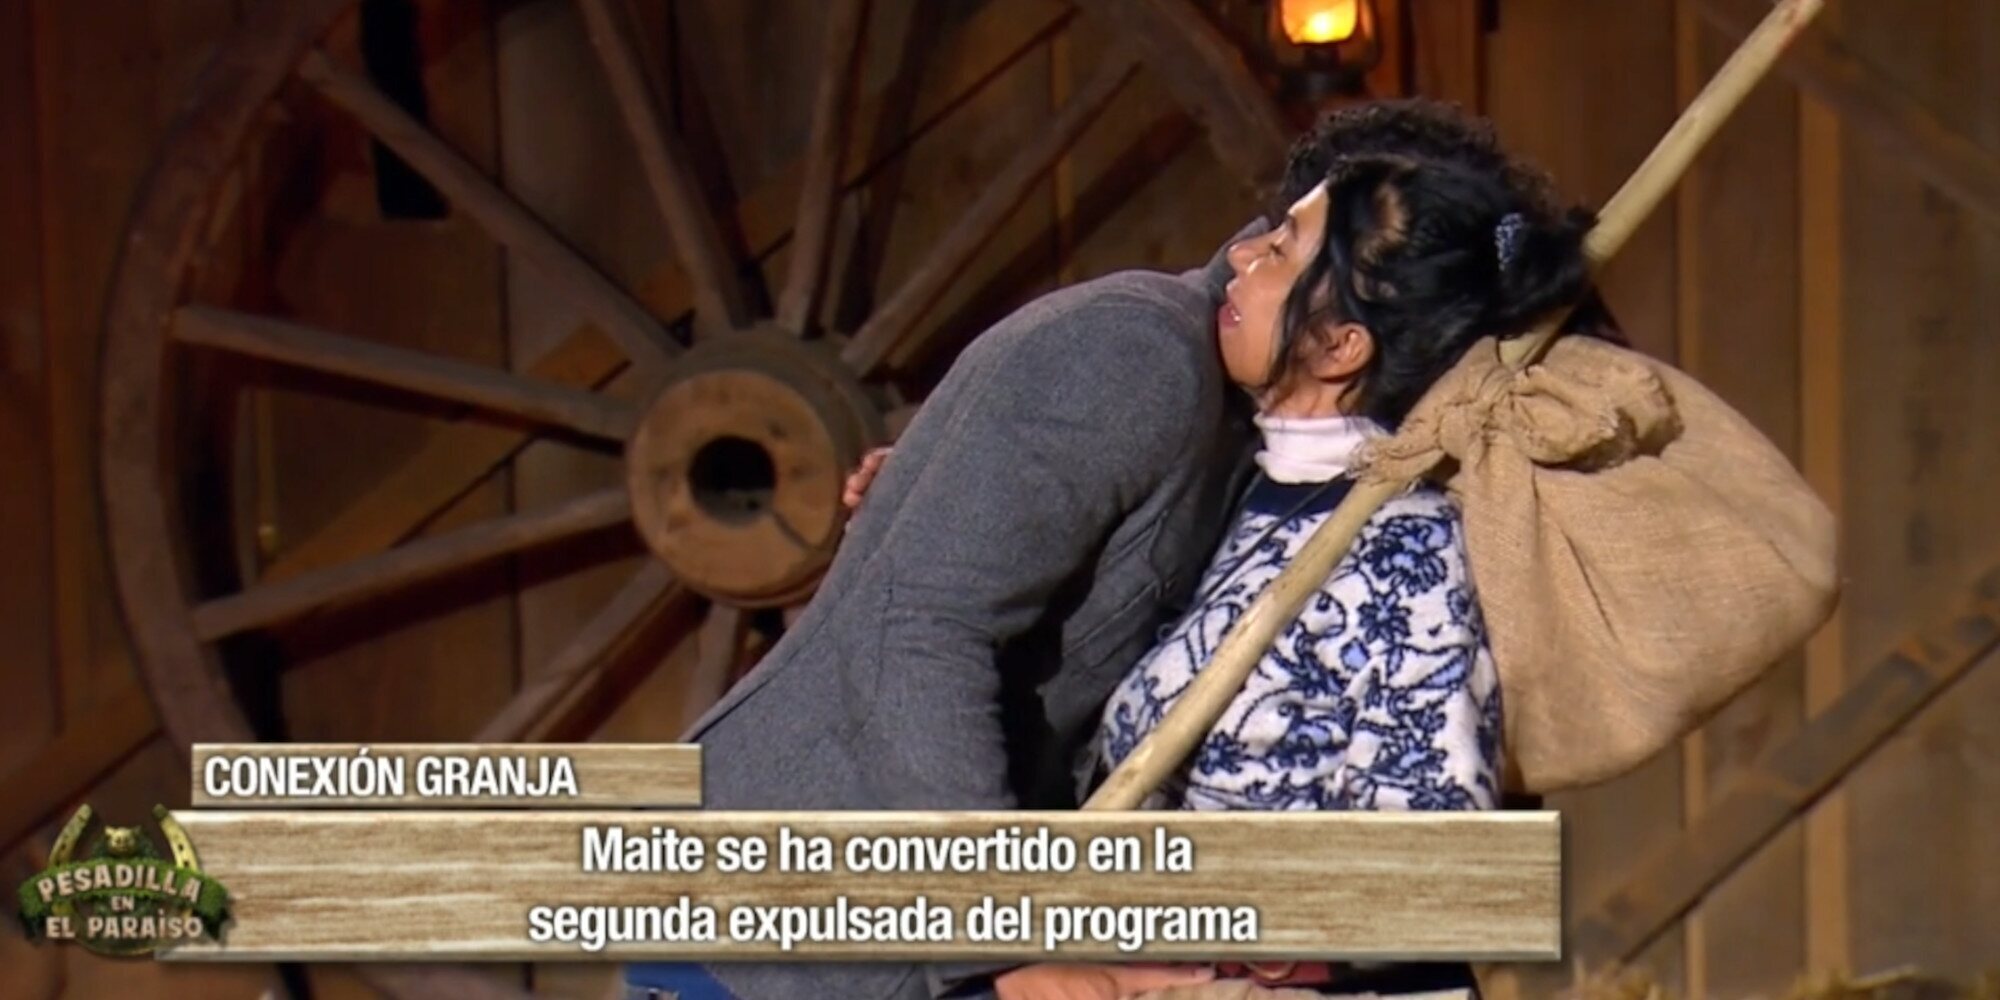 La emotiva despedida de Maite Galdeano y Kiko Jiménez en 'Pesadilla en El Paraíso': "Confío en ti"